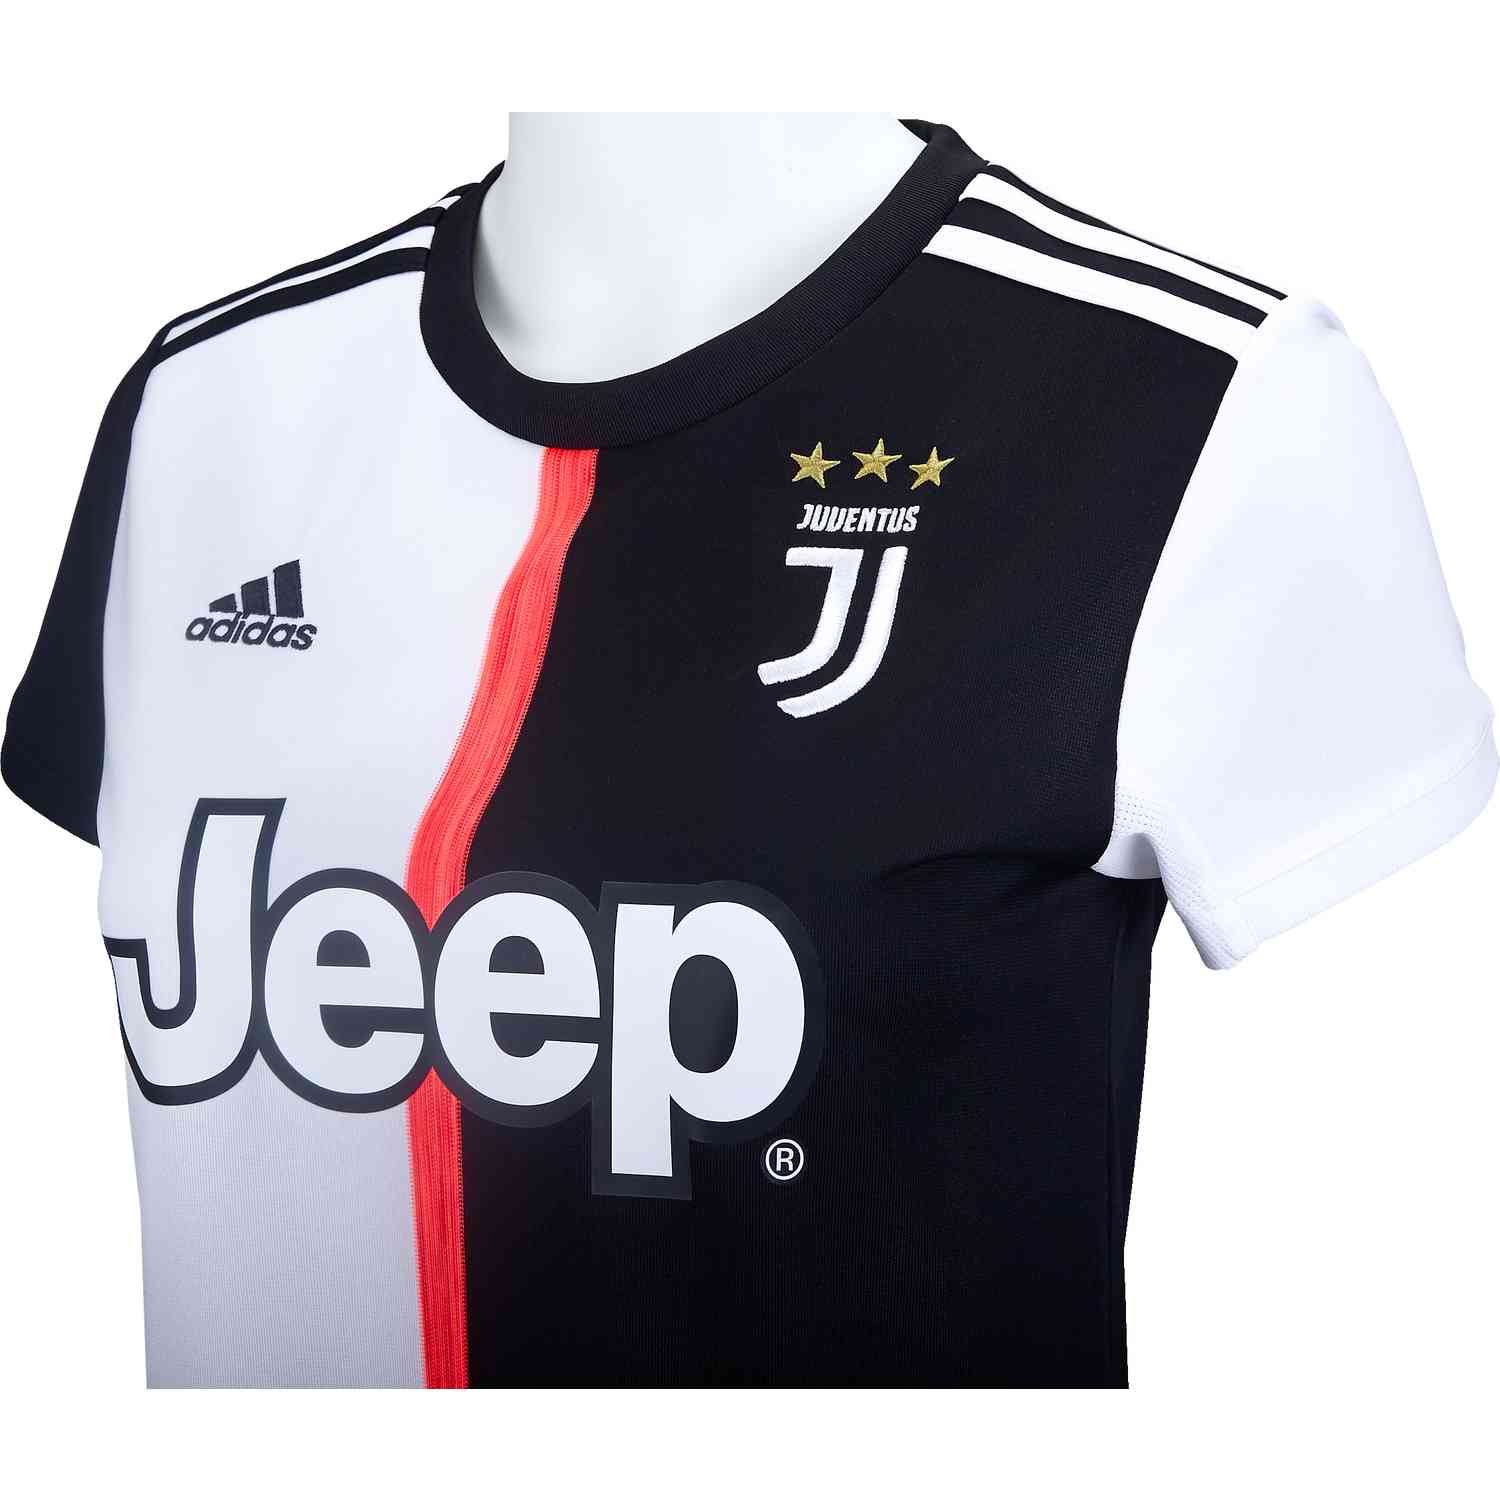 Download Jersey Font Juventus - Jersey Terlengkap